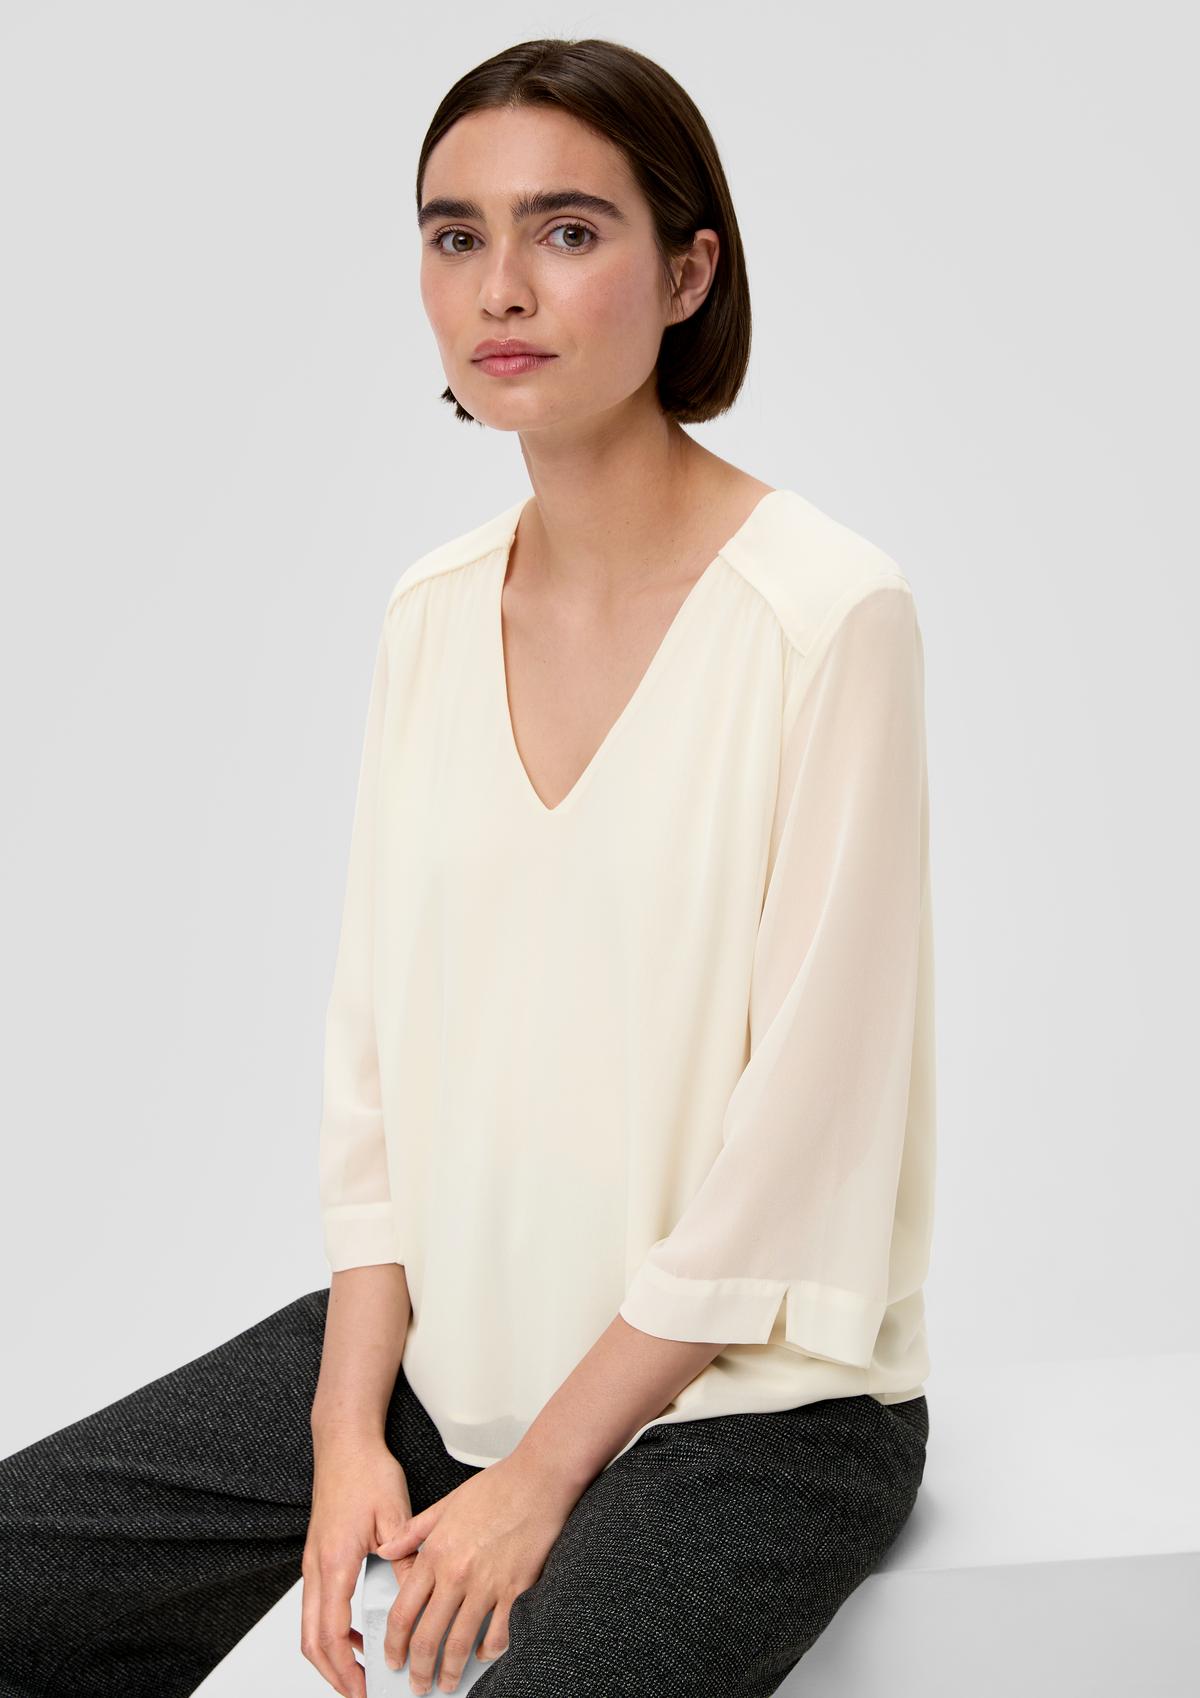 Chiffon blouse with viscose lining